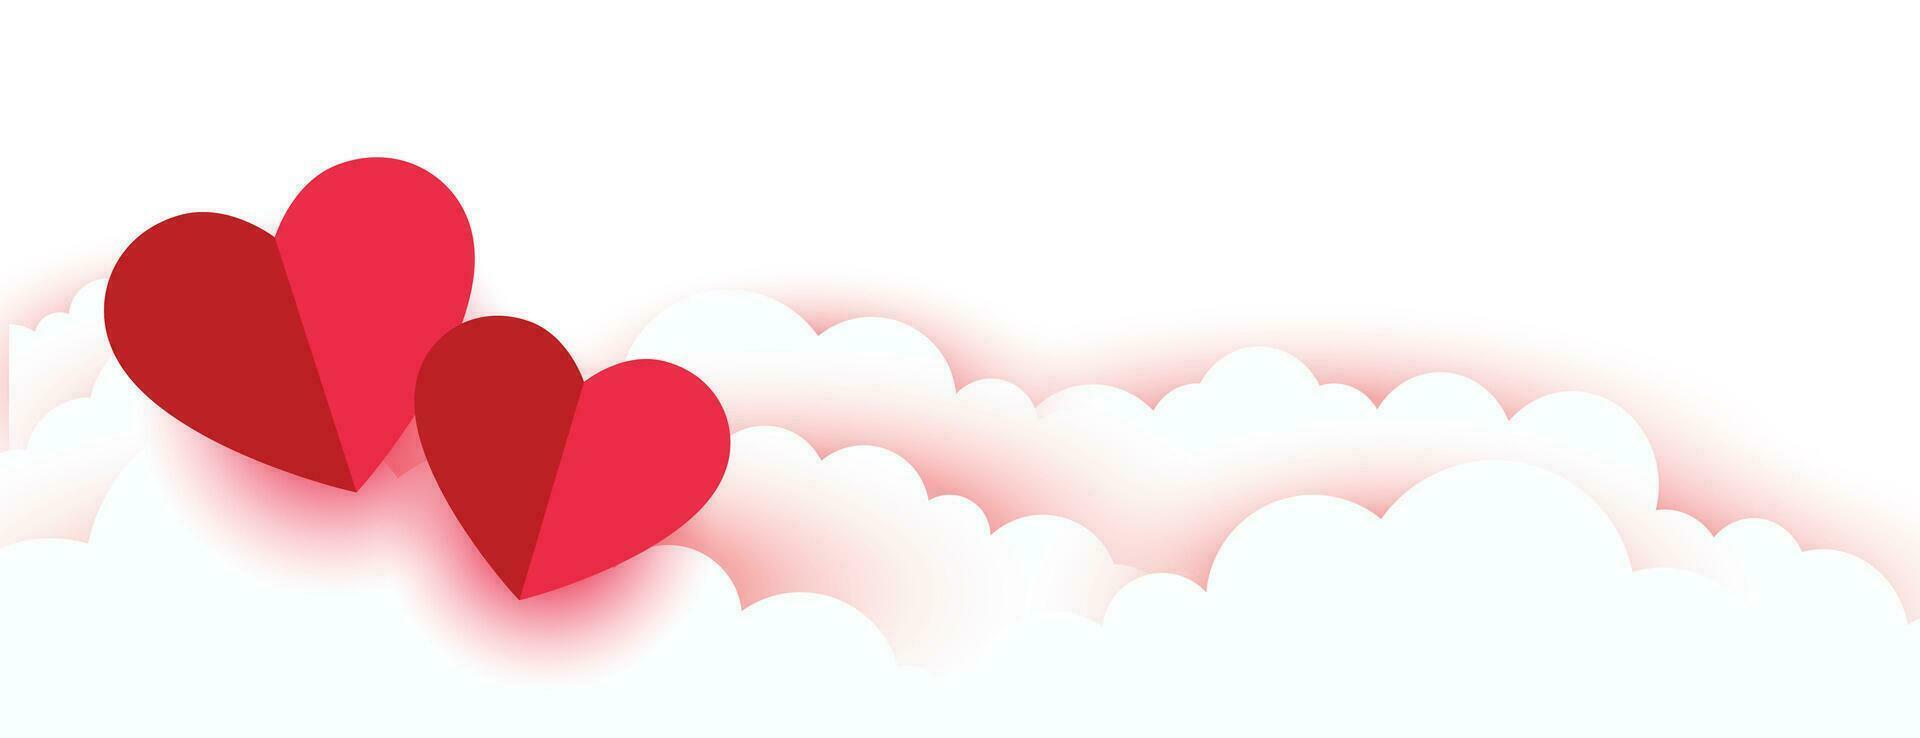 valentines dag romantisk papper hjärtan och moln baner vektor